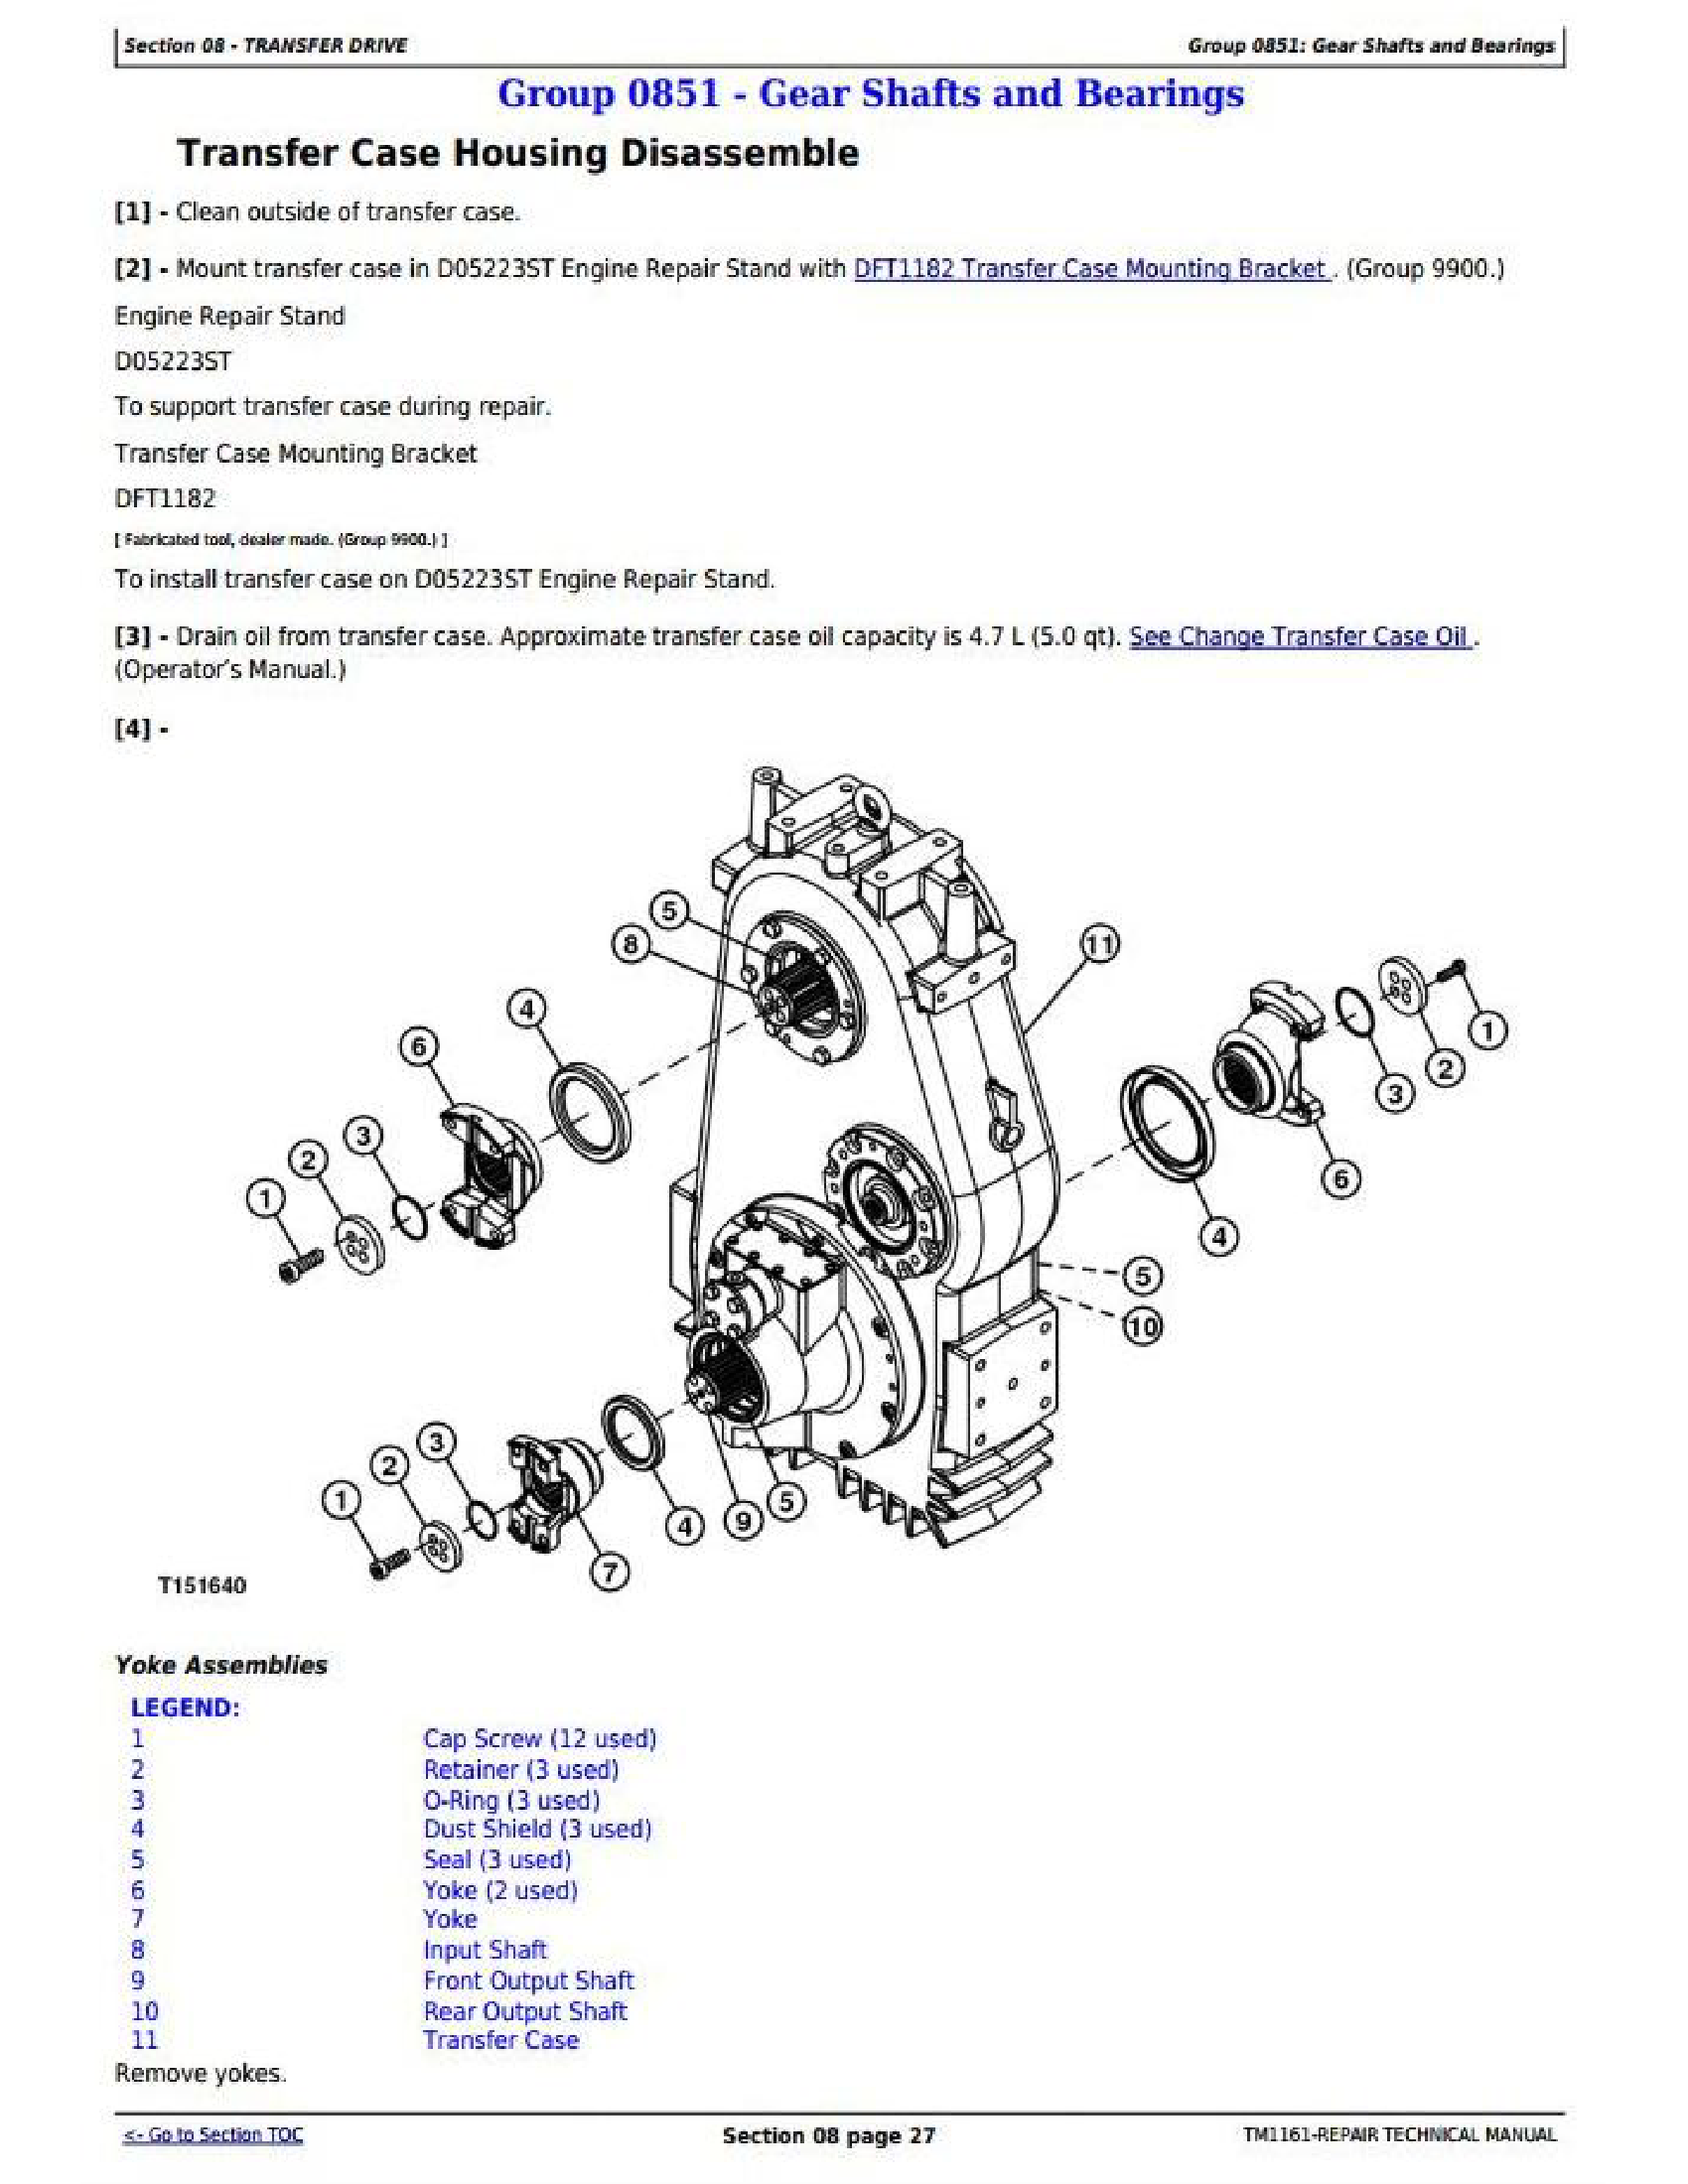 John Deere 1745 manual pdf